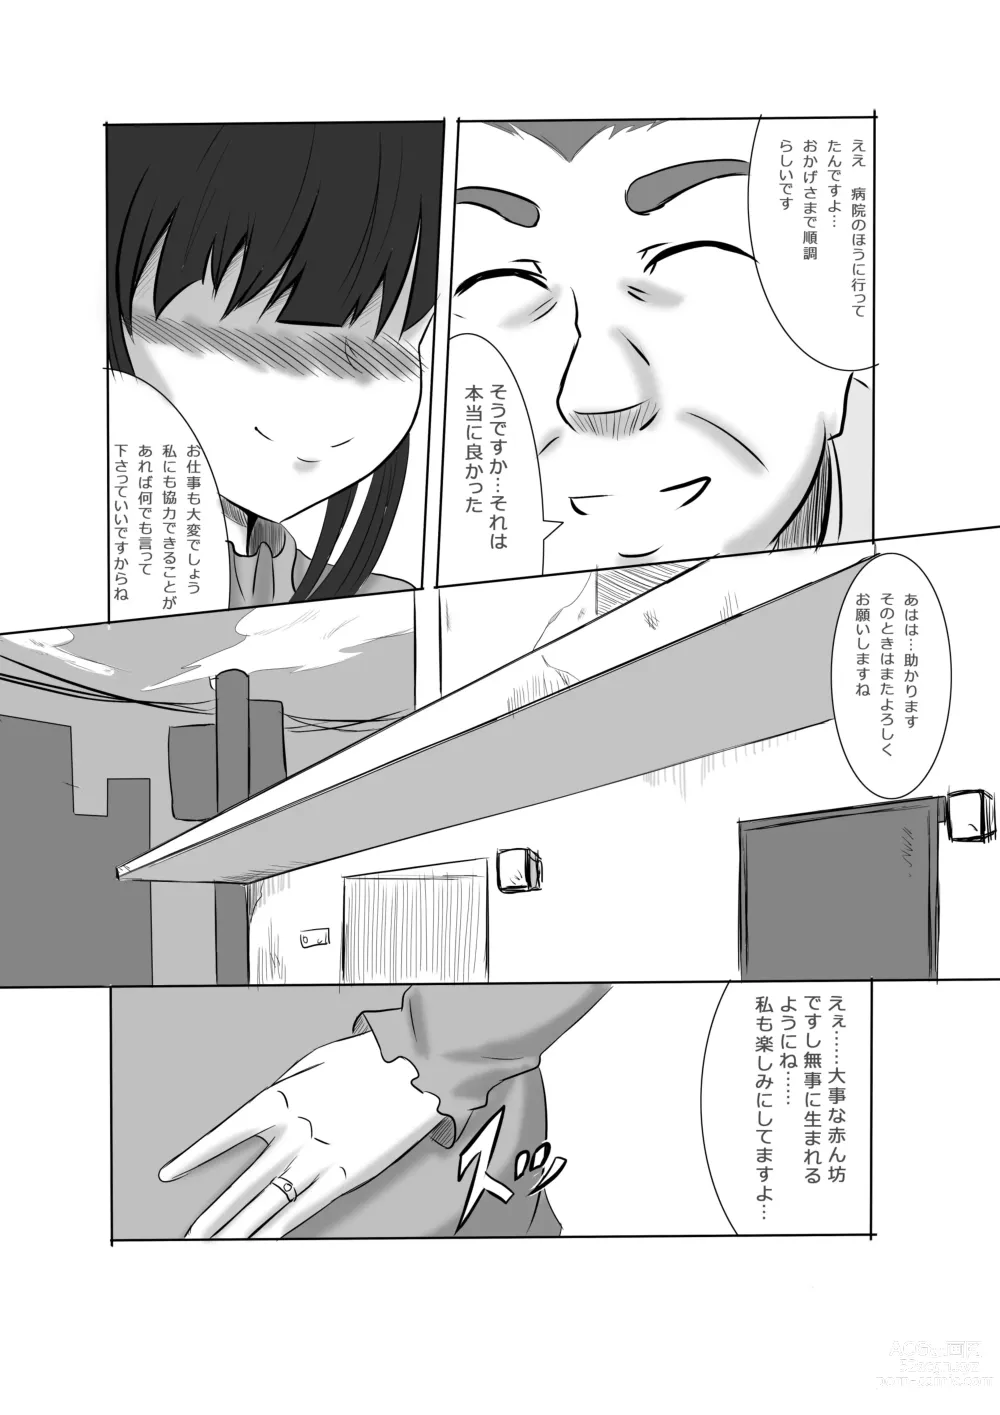 Page 75 of doujinshi Anata no Ko o Haramu made